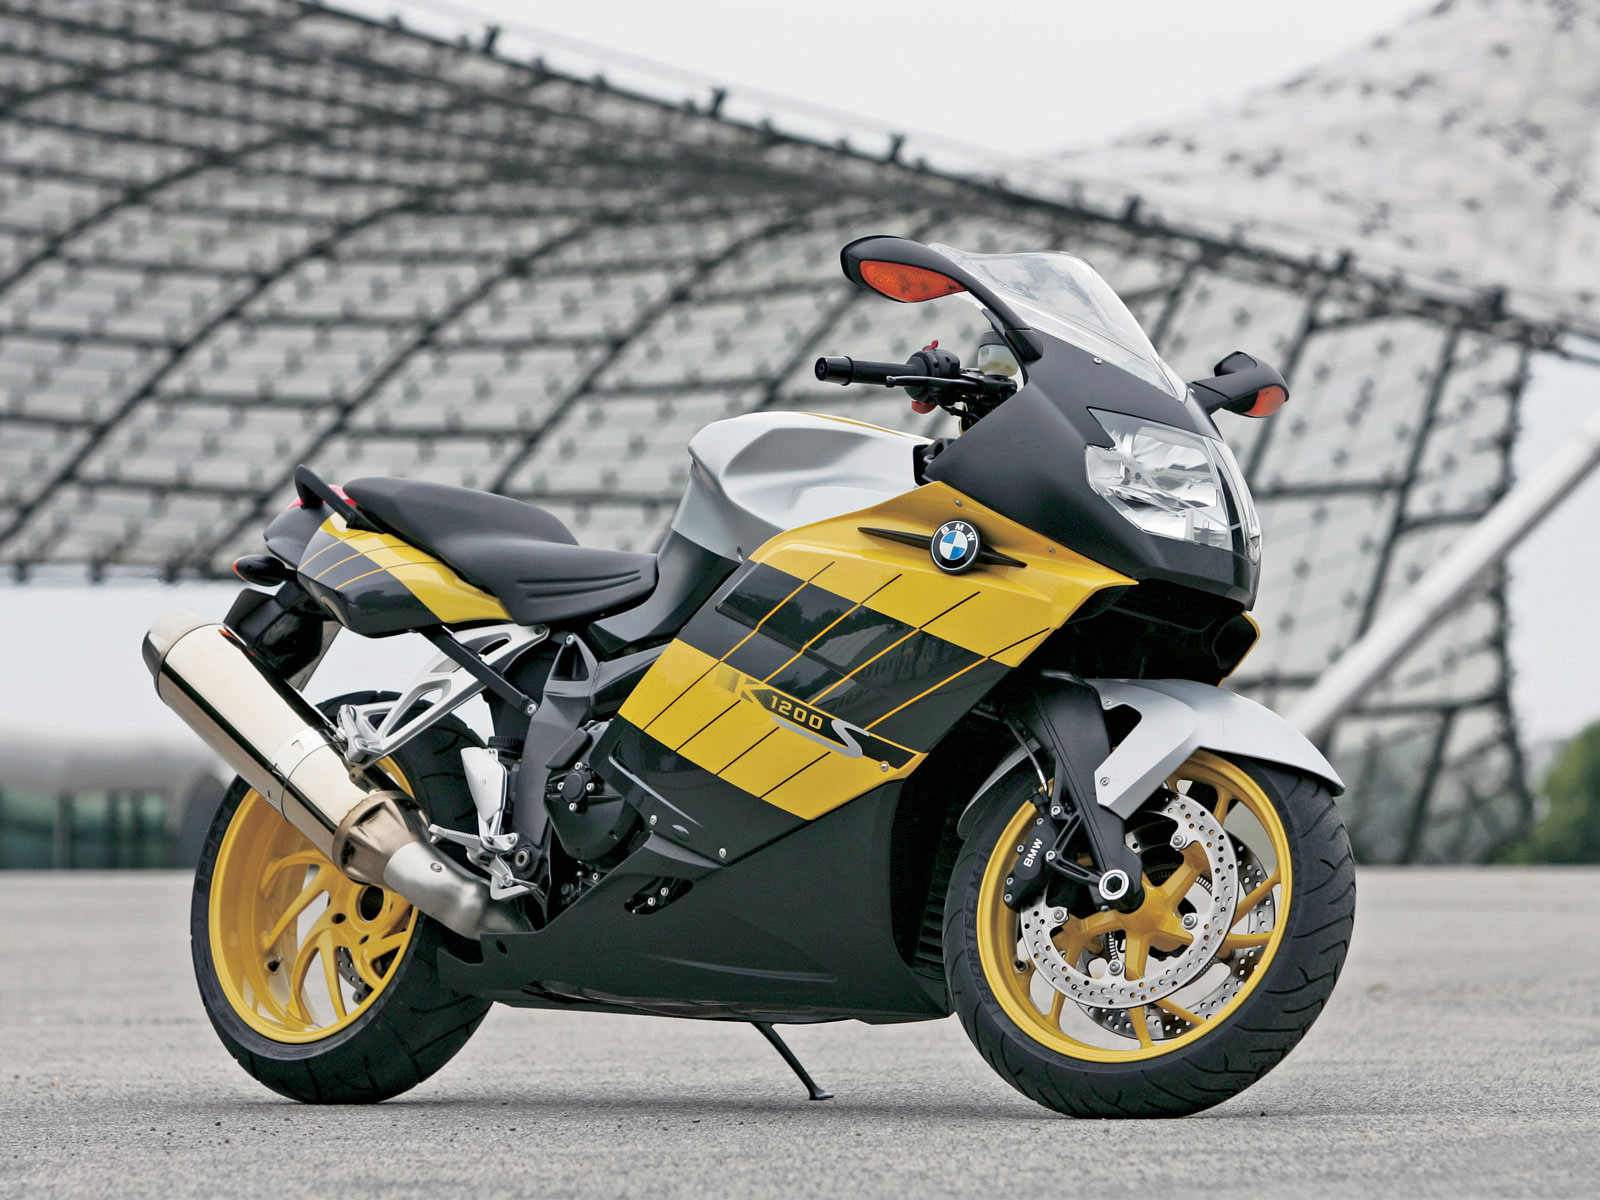 Мотоцикл bmw k1200s 2005 — излагаем в общих чертах